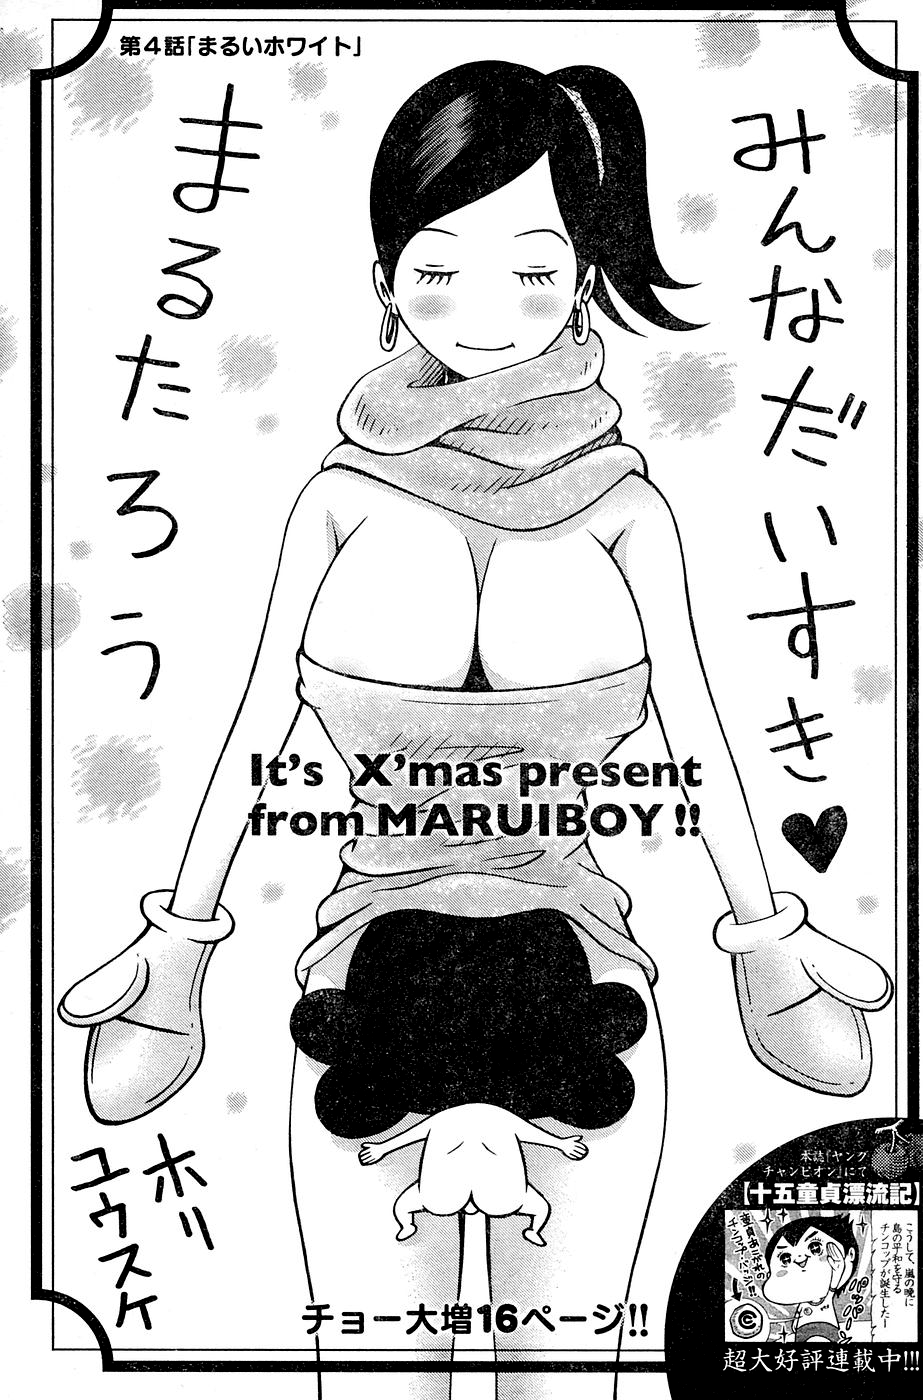 Minna Daisuki Marutarou - Page 1